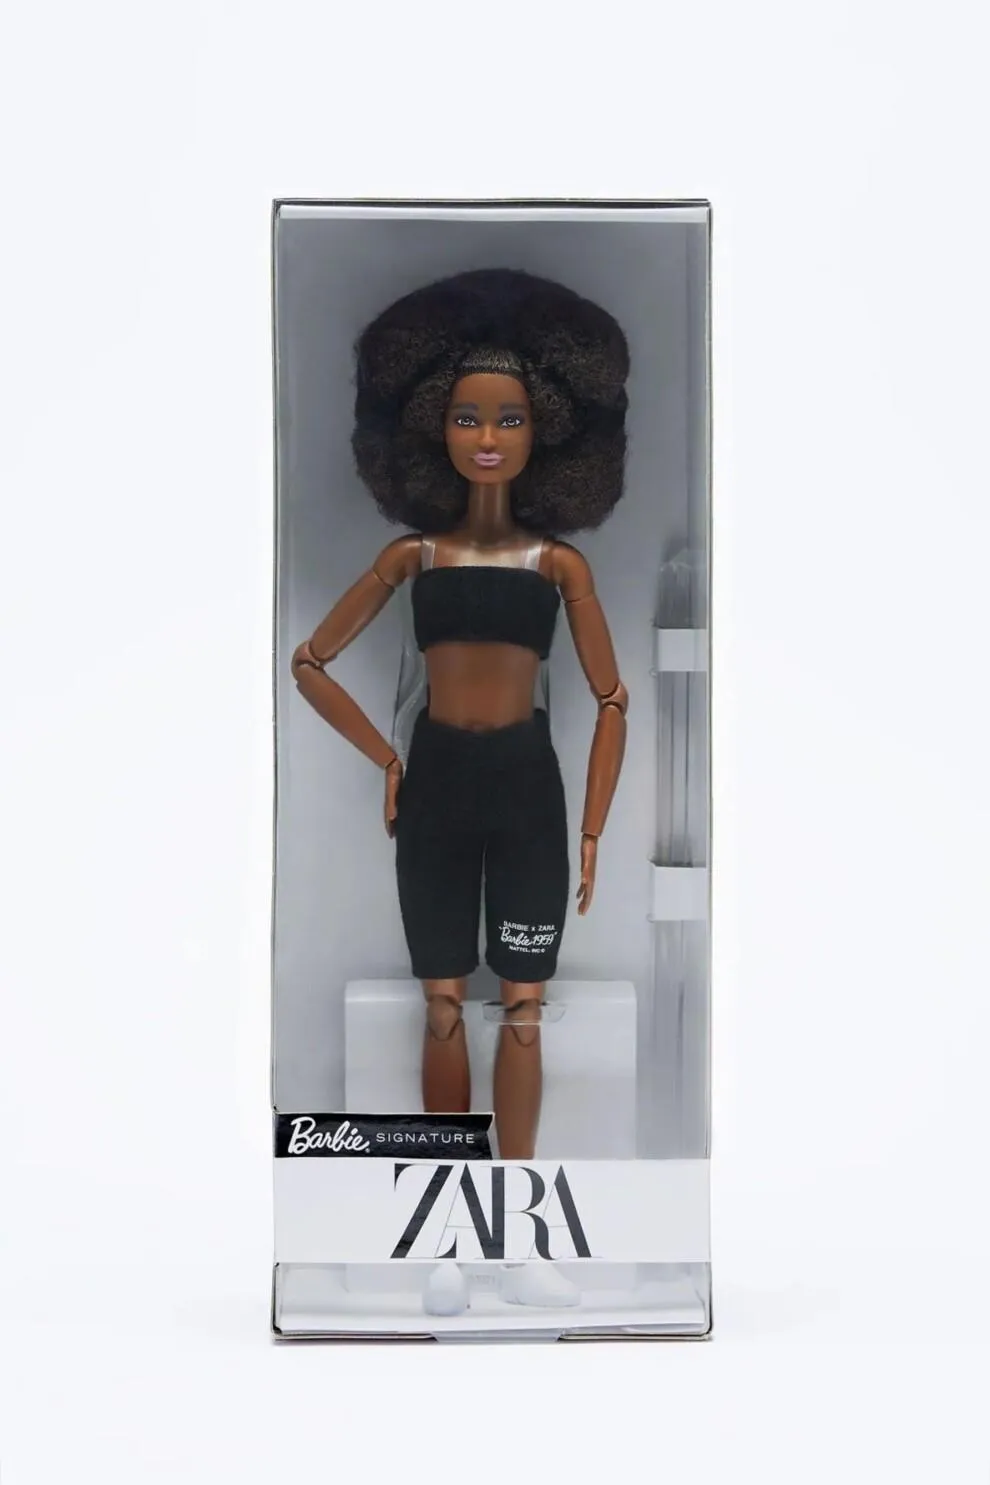 Zara випустила лімітовану колекцію ляльок Barbie